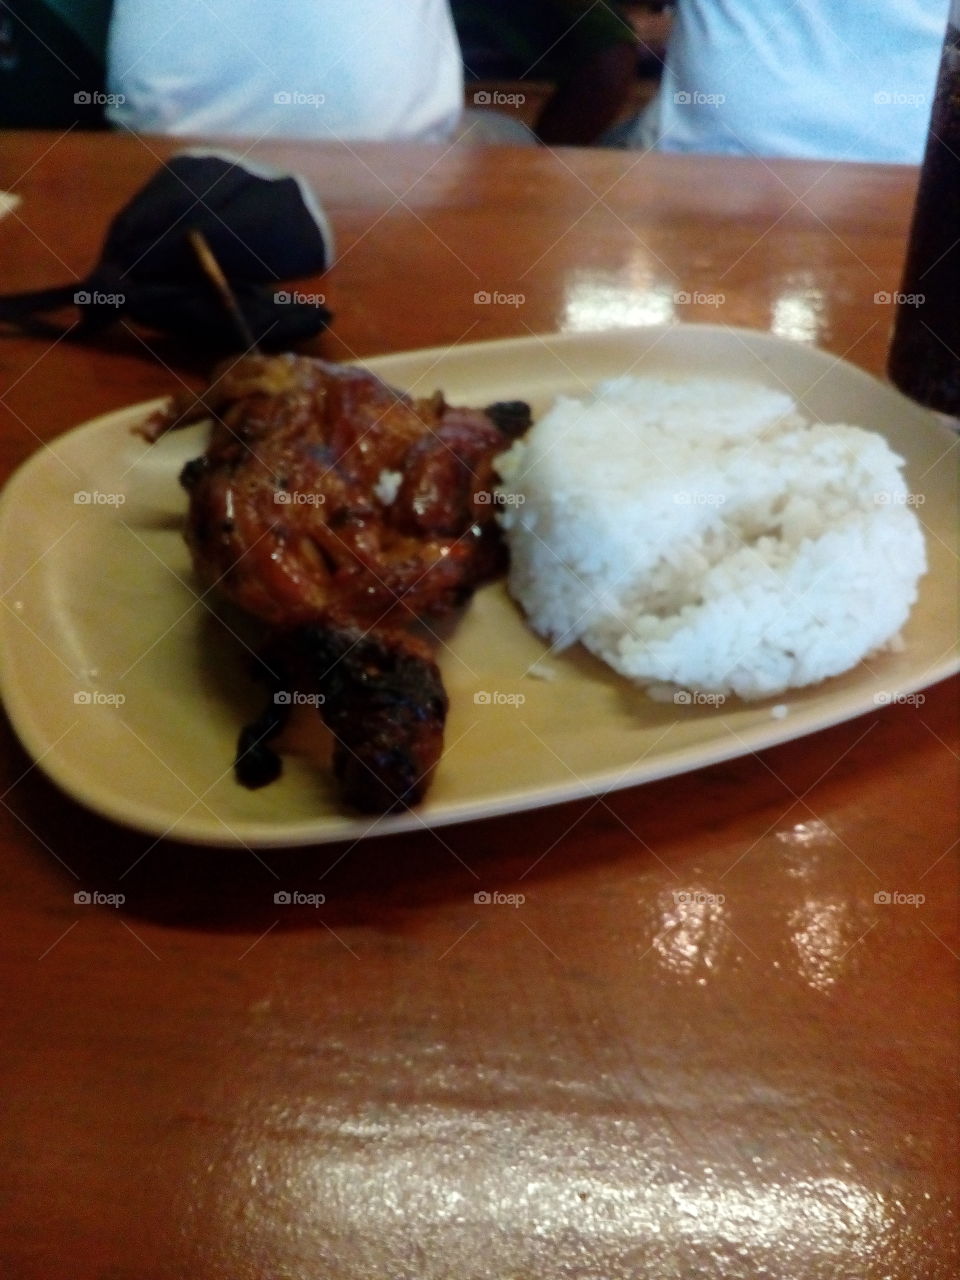 Mang Inasal menu: Chicken spicy and rice